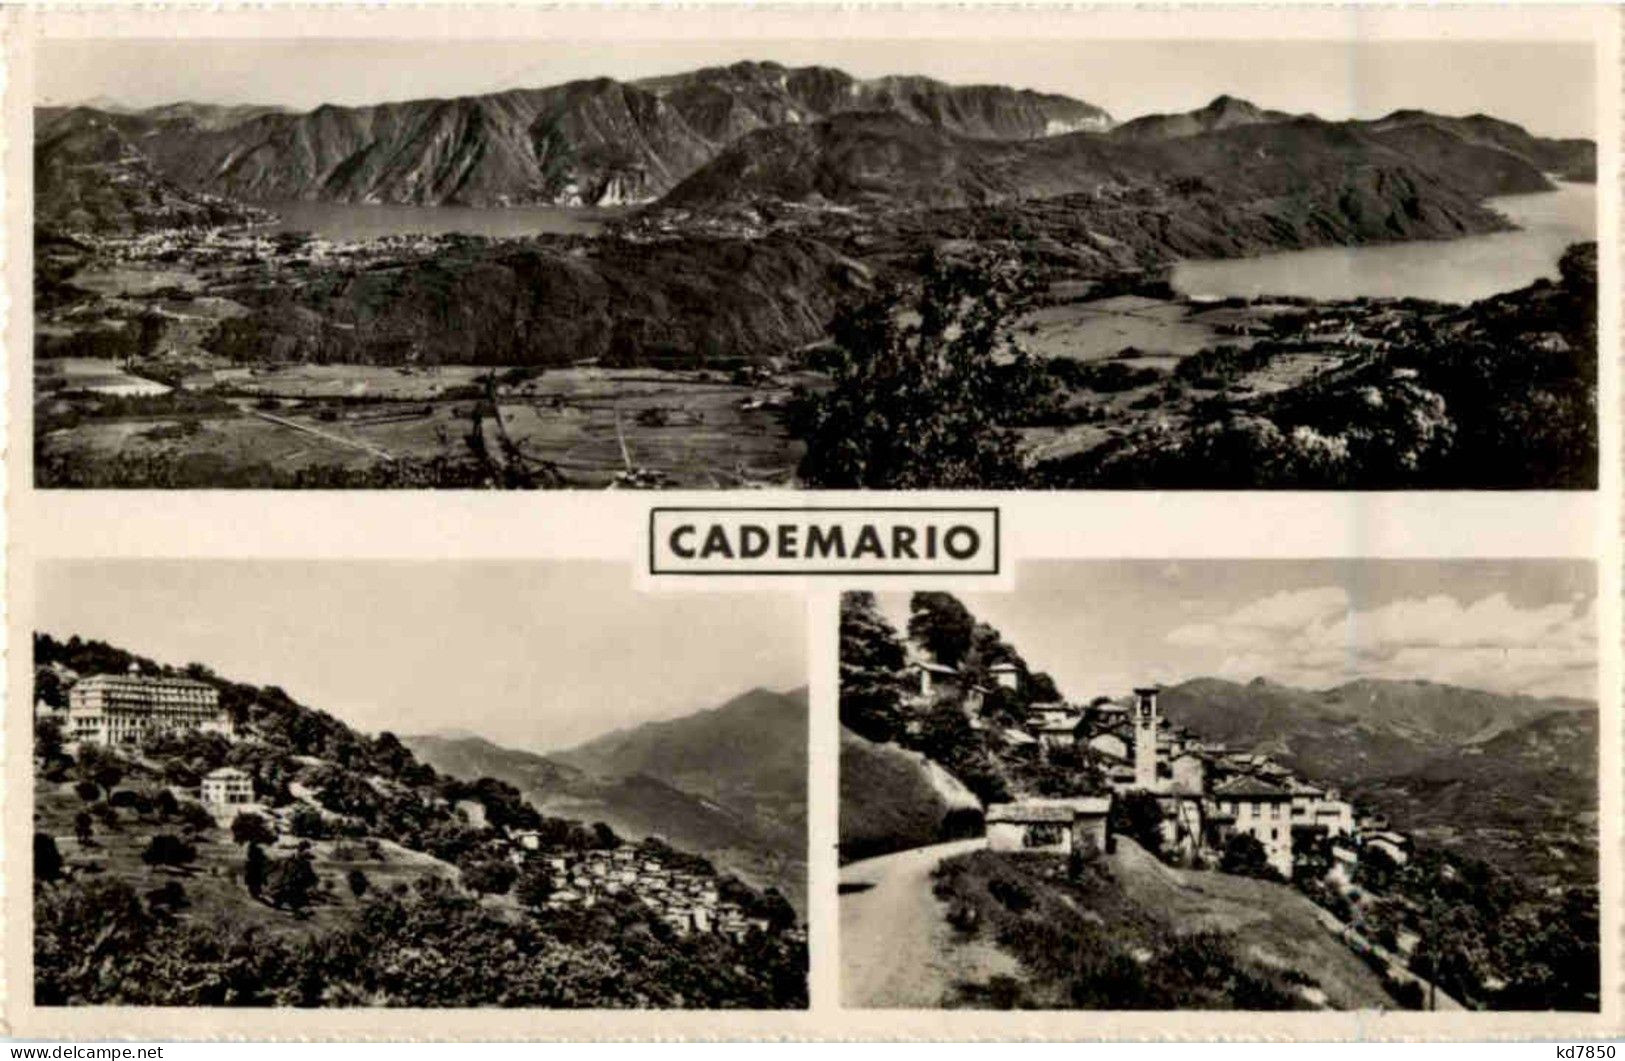 Cademario - Cademario